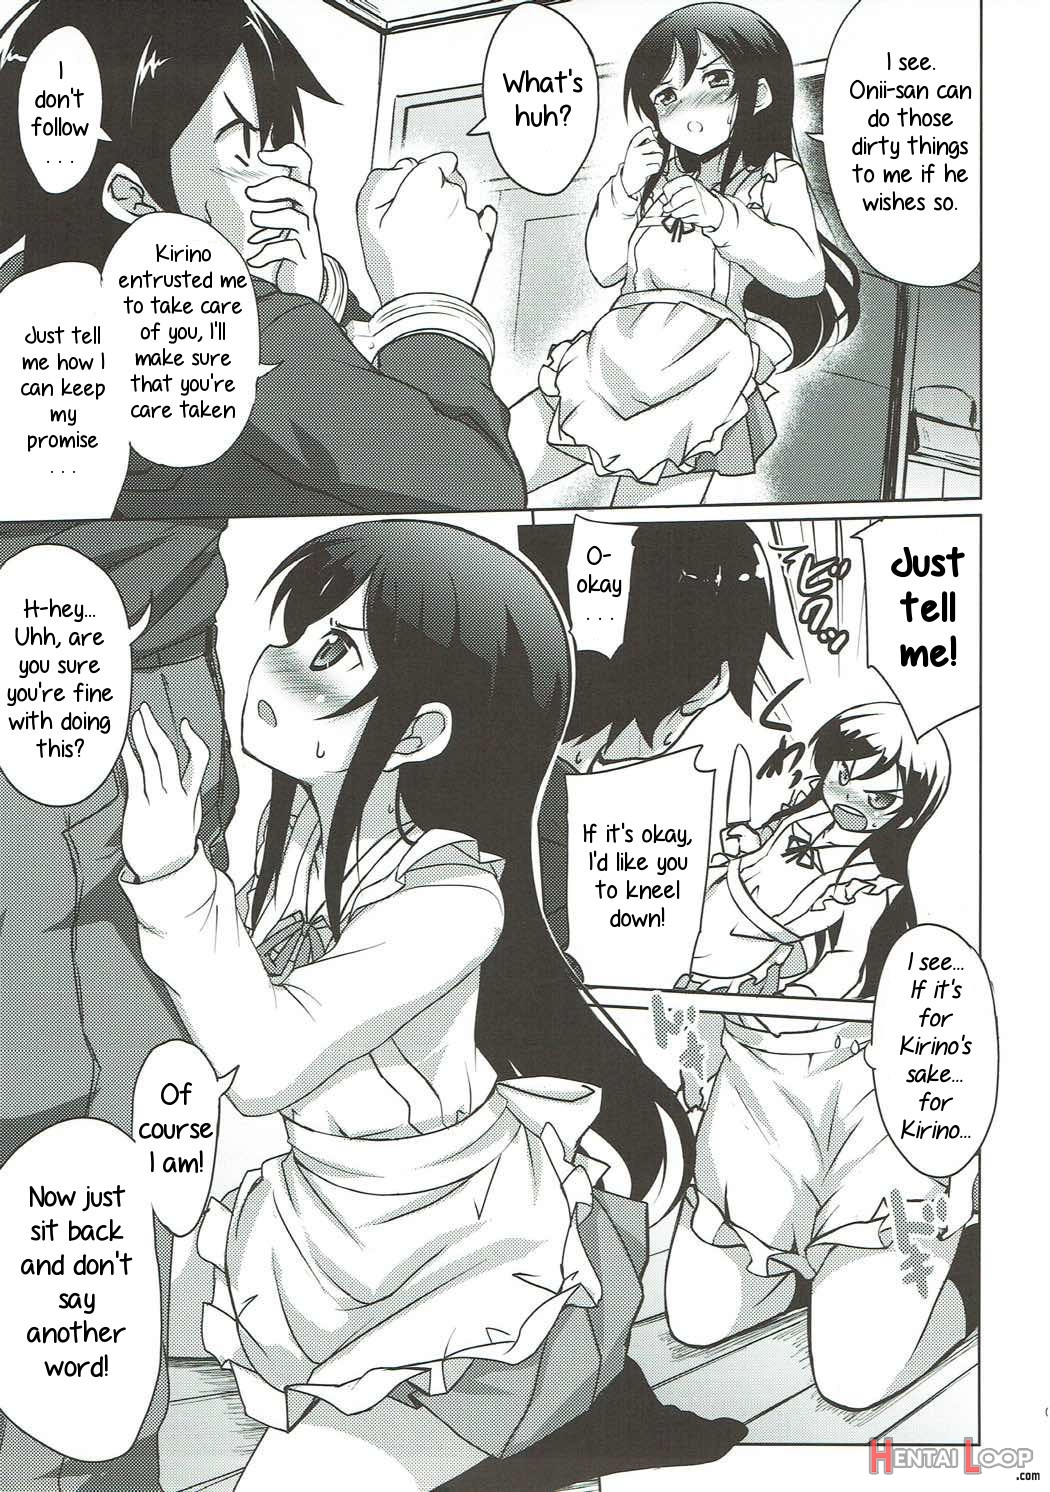 Onii-san No Ecchi! Hentai! page 4